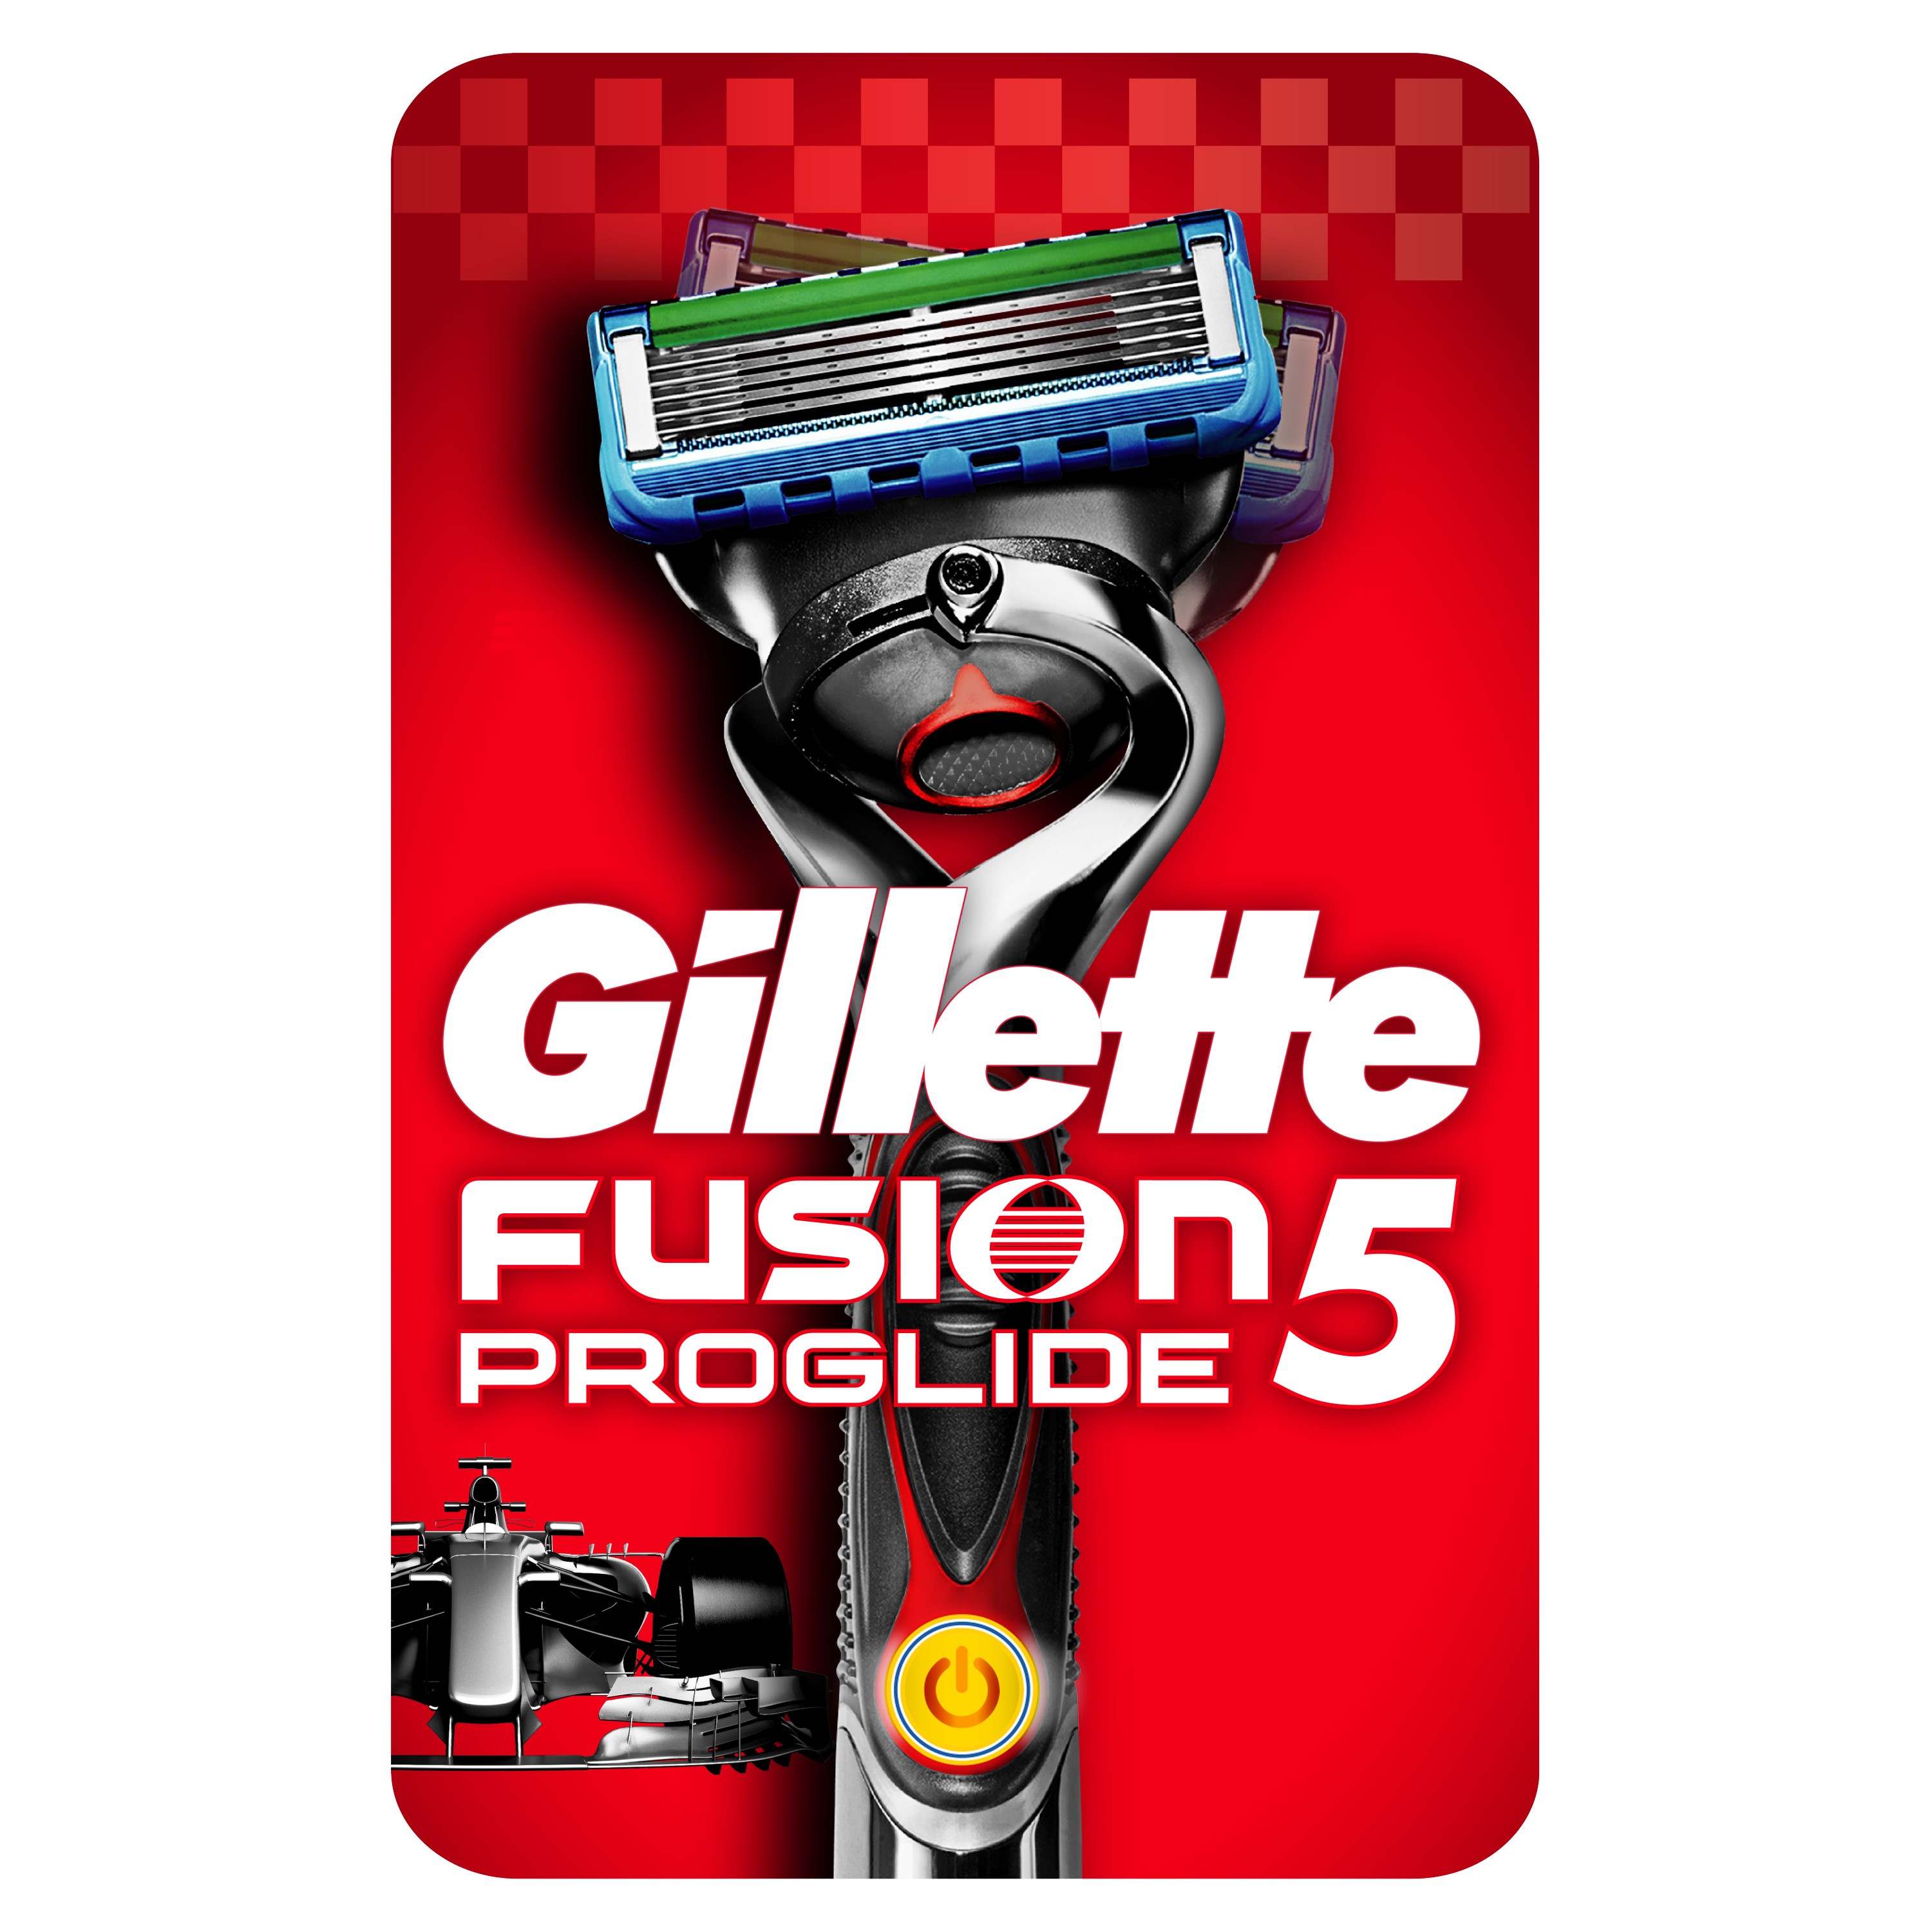 Бритва GIllette Fusion5 Proglide Power с 1 сменной кассетой (с элементом питания) ► Фото 1/2